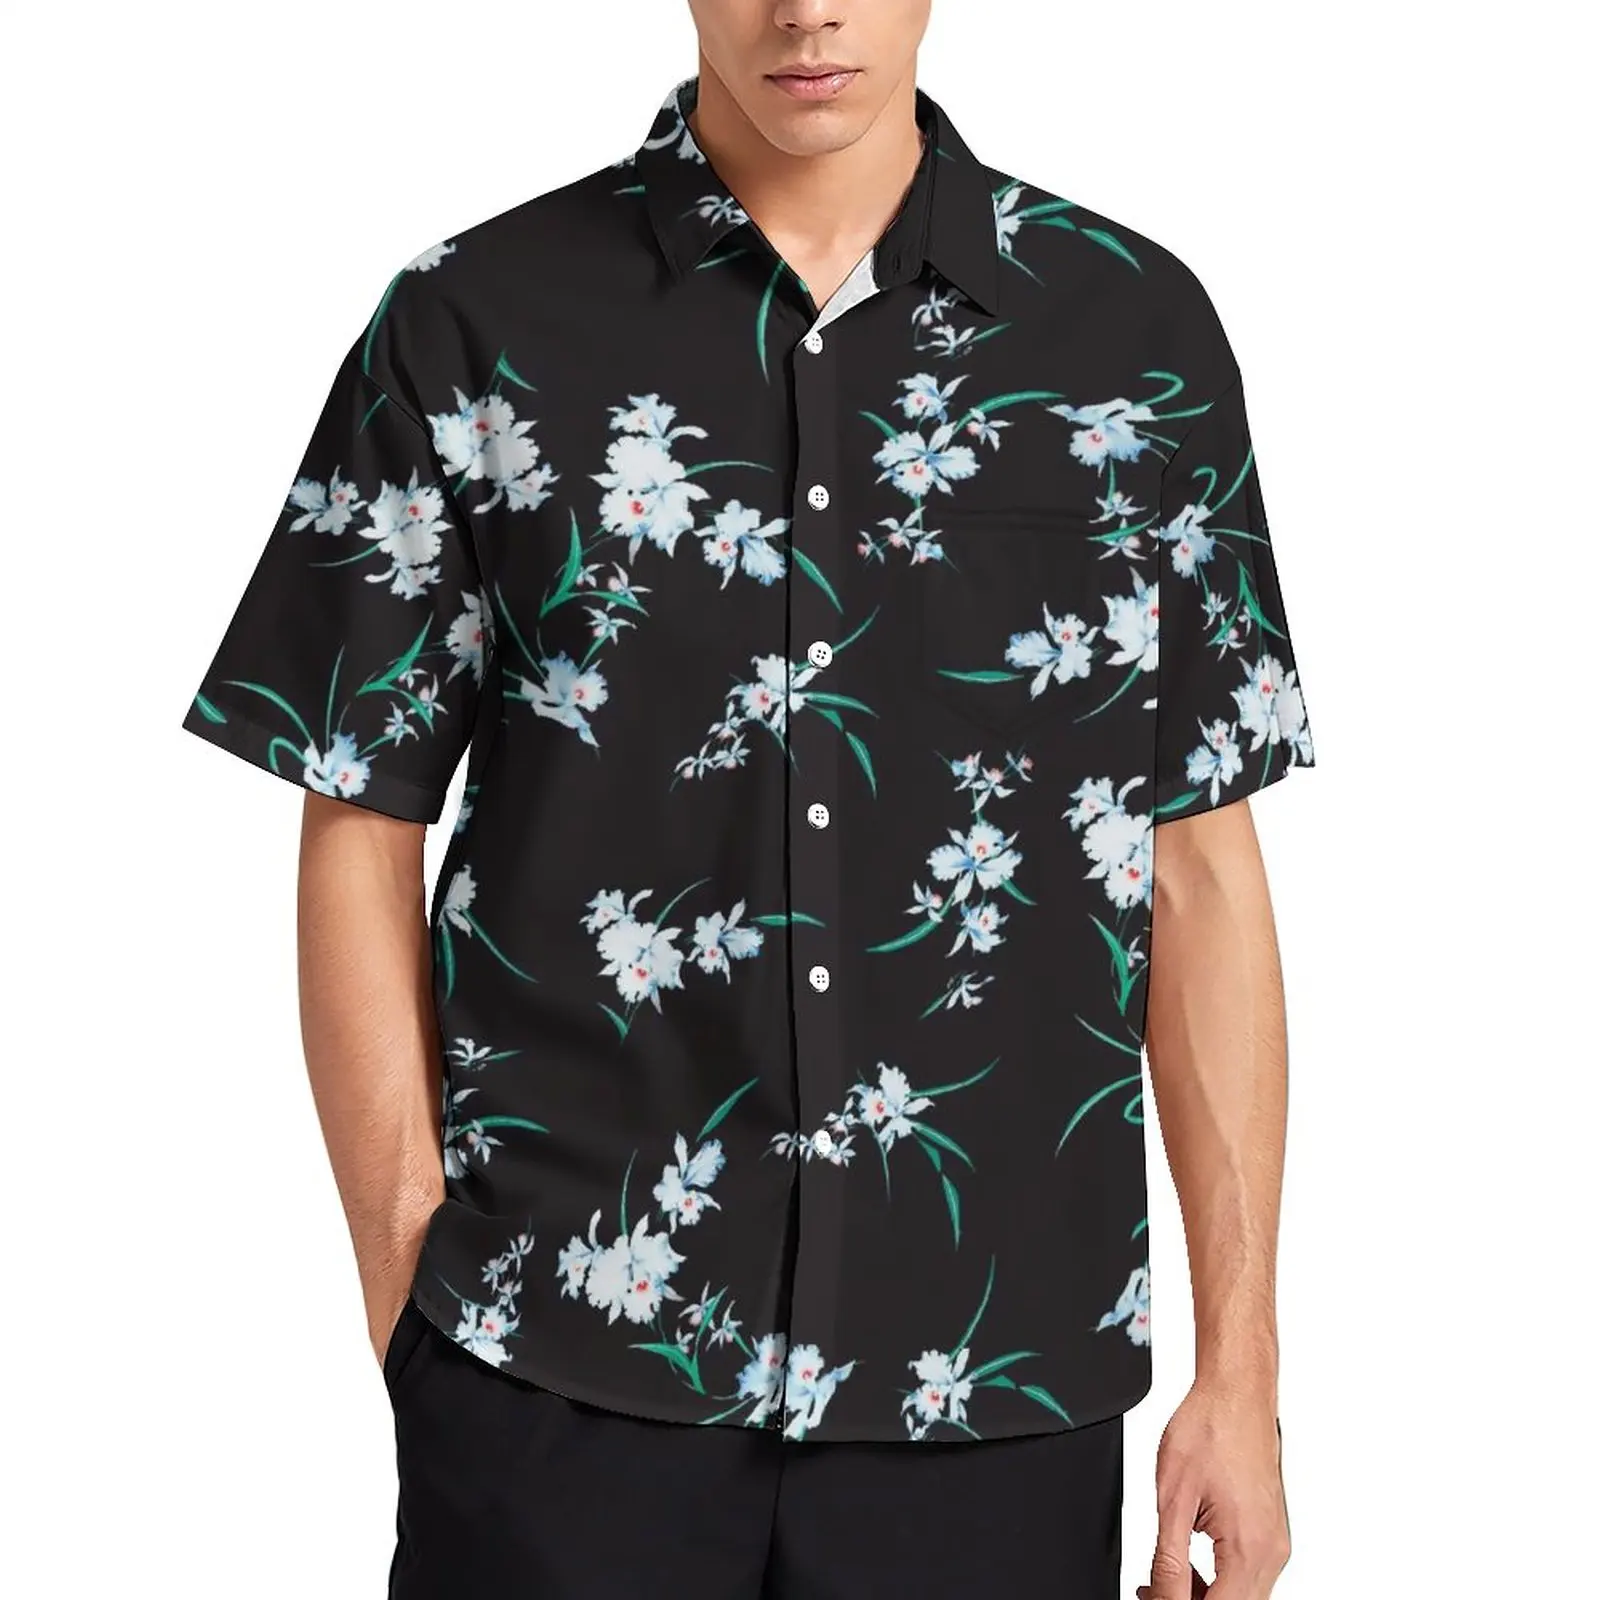 

Пляжная рубашка с милыми цветами, мужские повседневные рубашки с цветочным принтом и листьями, Гавайские модные блузки большого размера с короткими рукавами на заказ, идея для подарка